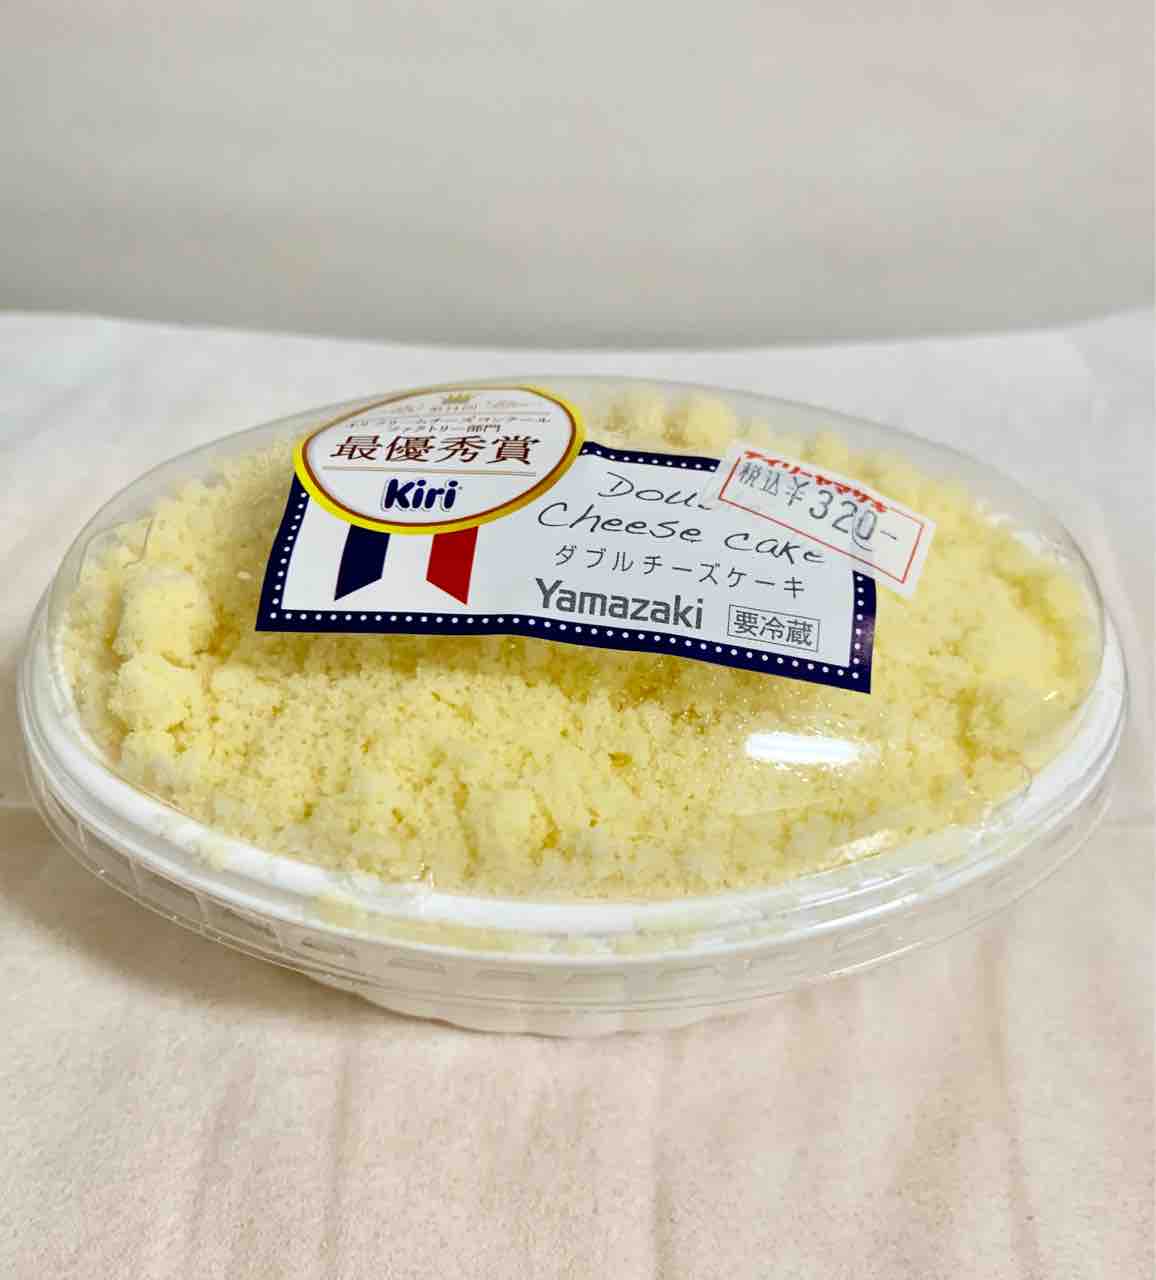 デイリーヤマザキ 最優秀賞 ダブルチーズケーキ Kiri クリームチーズ使用 Mihopinkのblog